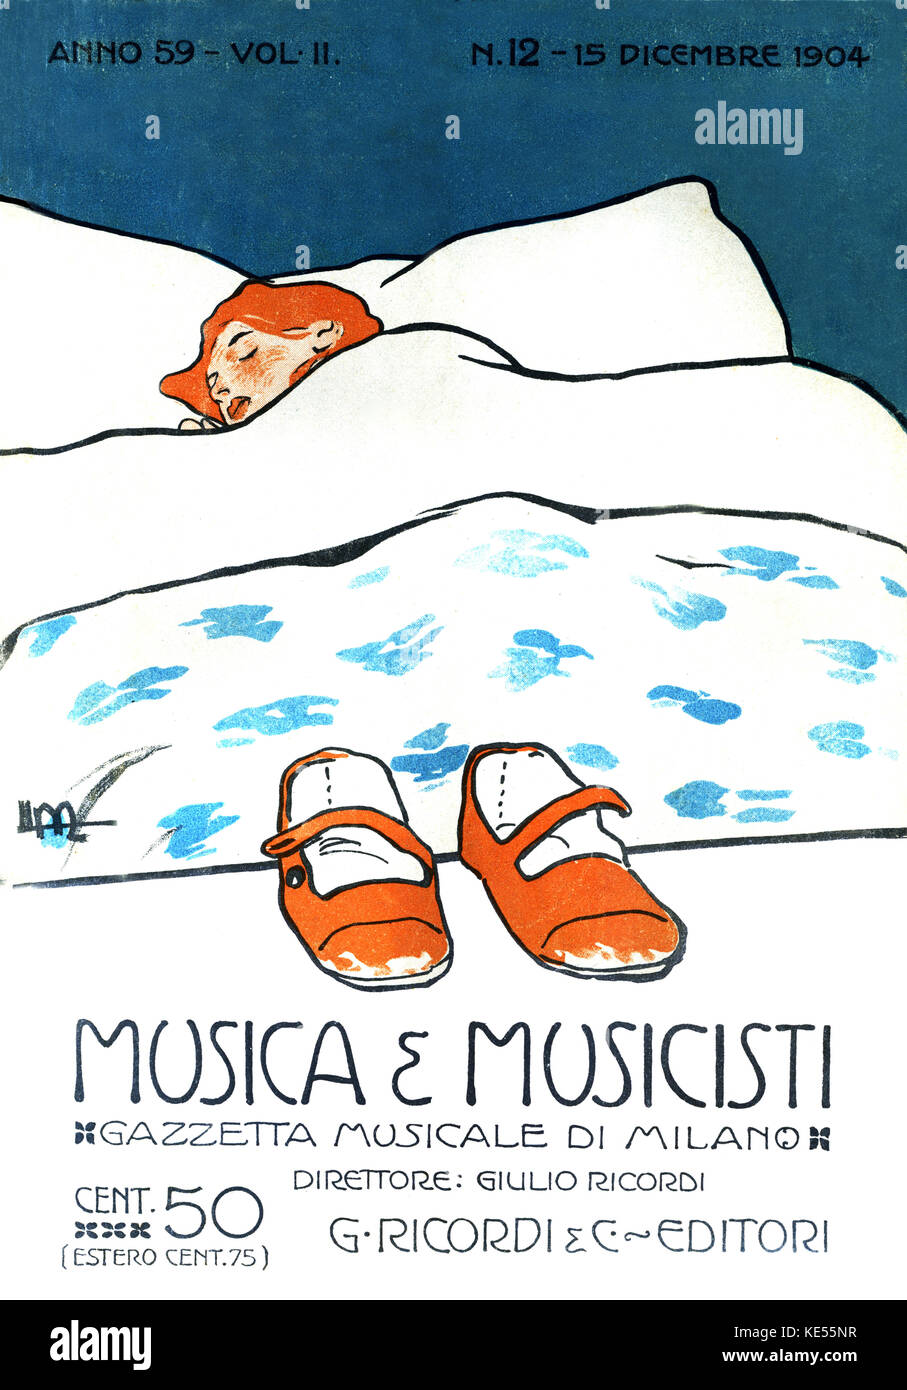 Femme endormie avec des chaussures rouges. Couverture de magazine de musique italienne, ' e Musica Musicisti ' , la Gazette musicale de Milan, 1904. Style Art nouveau. Banque D'Images